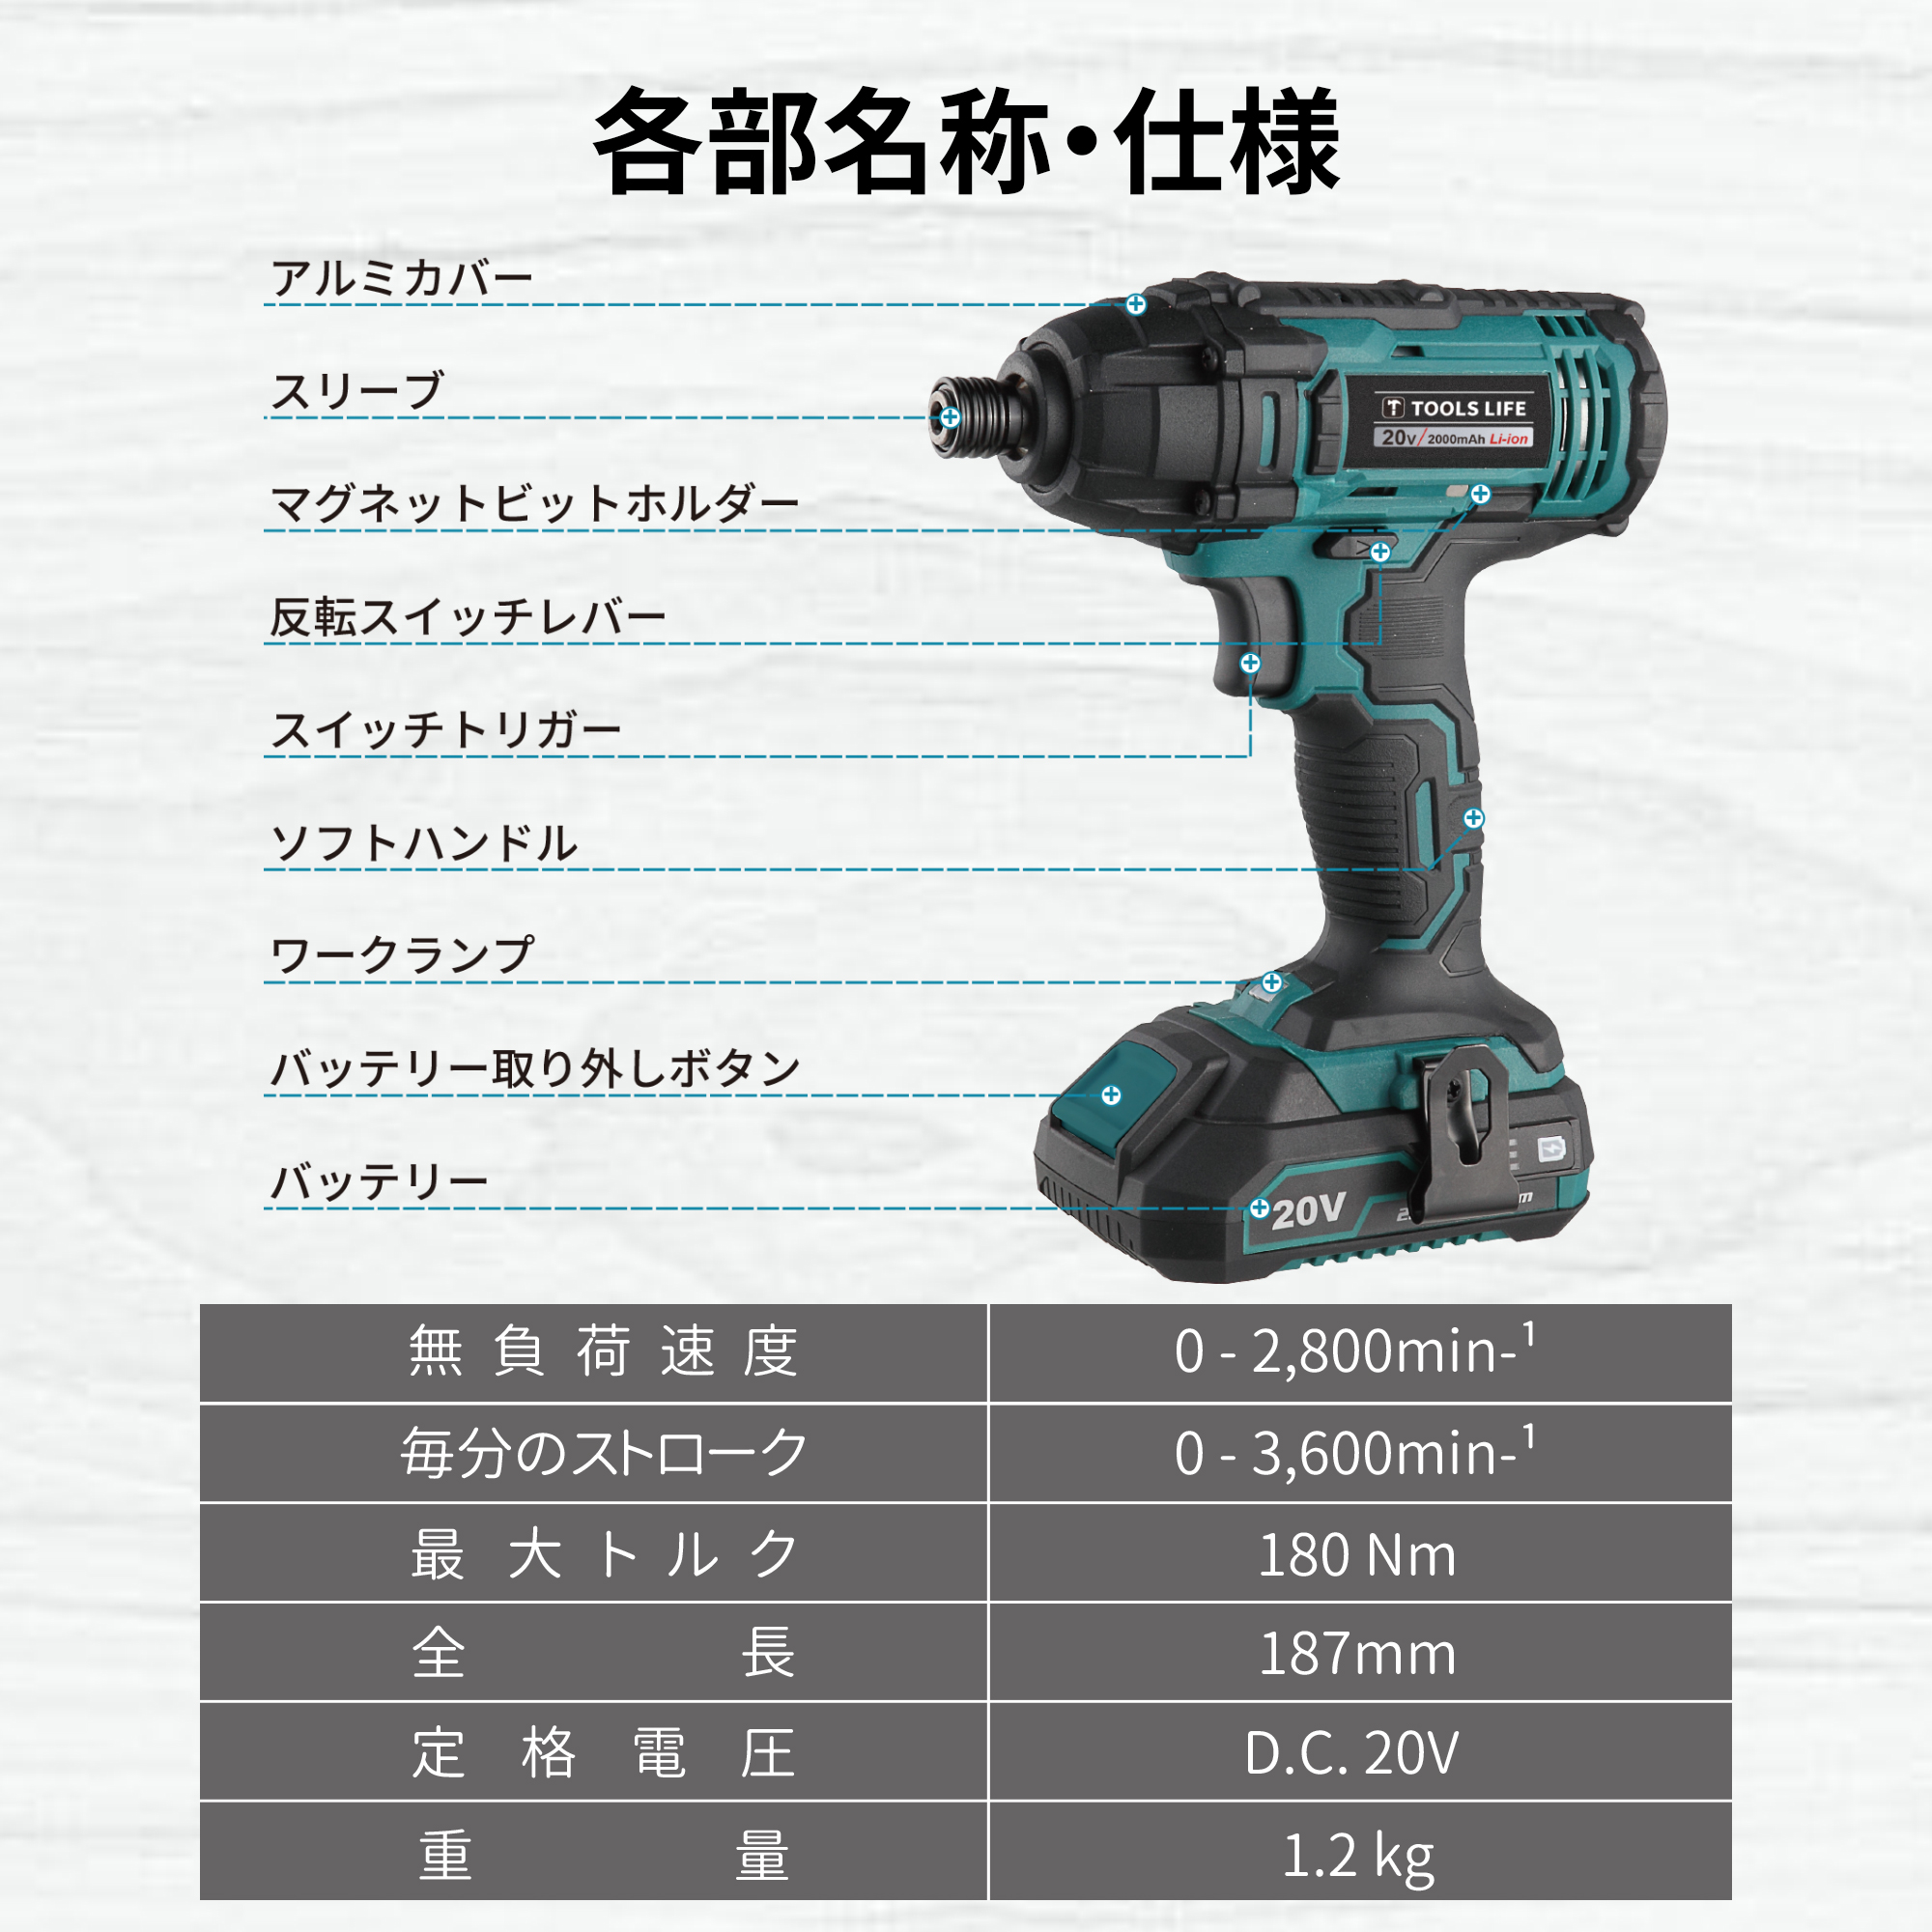 日本機器通販 / TOOLS LIFE インパクトドライバー (バッテリー・充電器